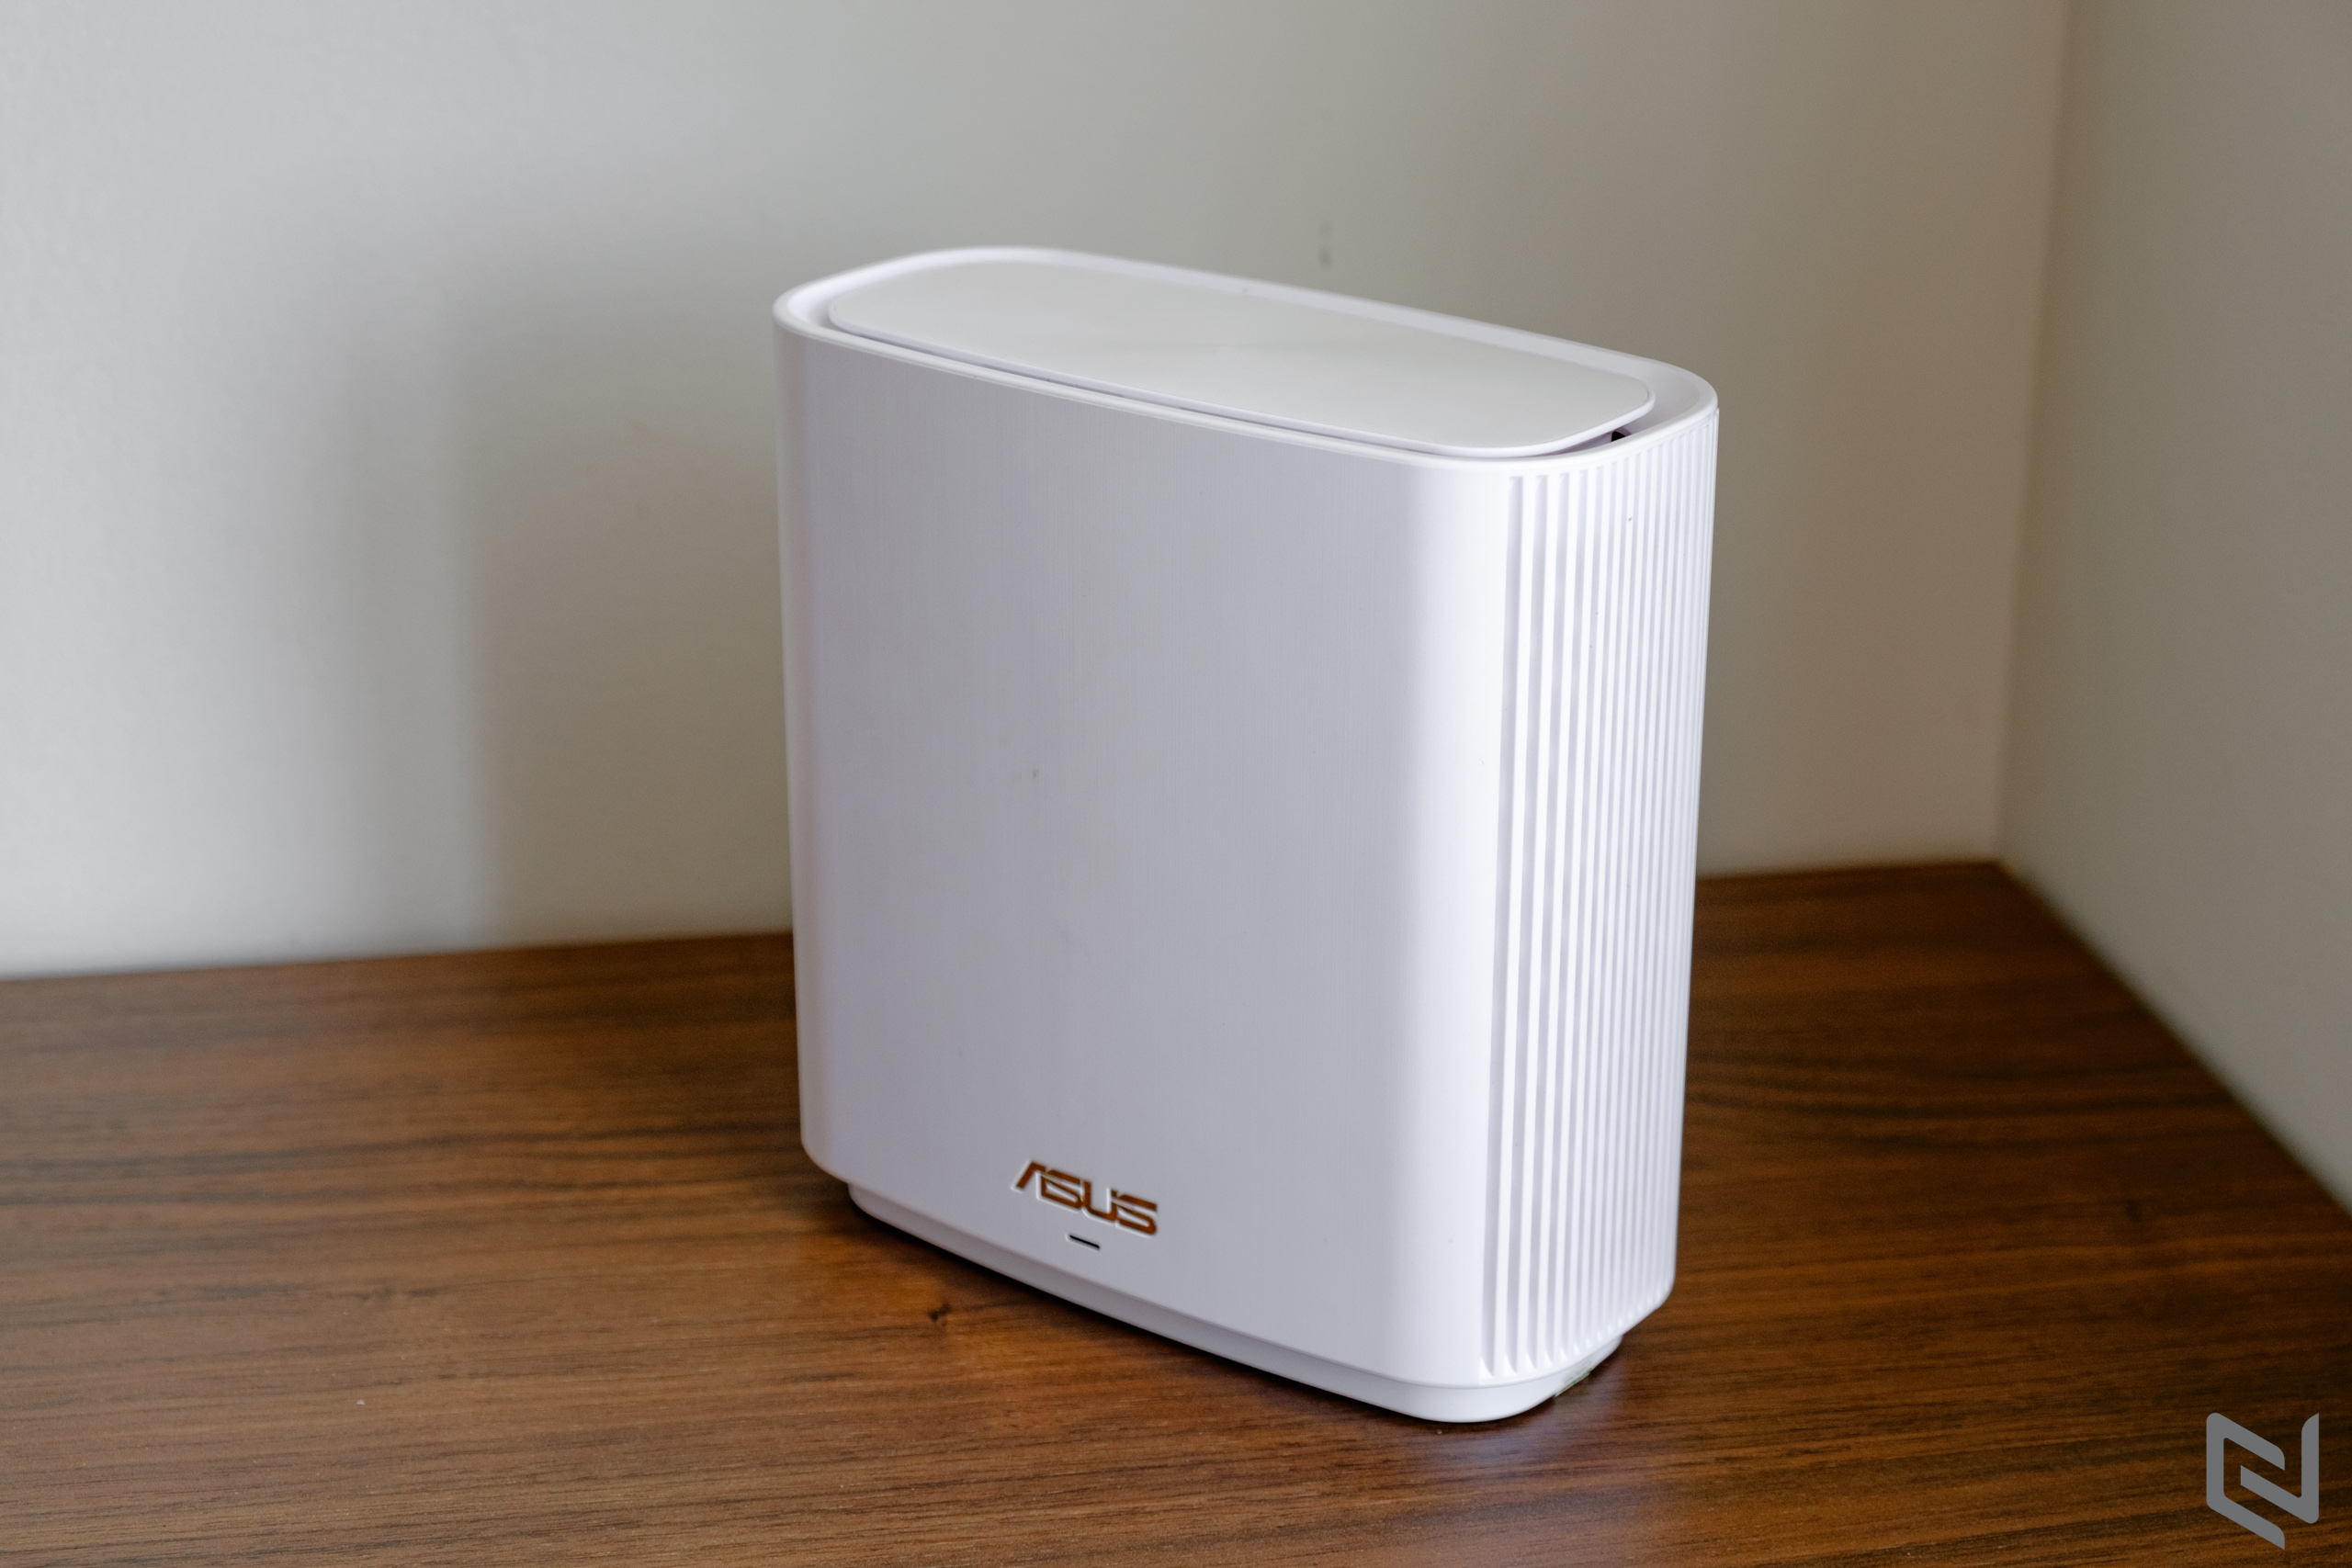 Trên tay ASUS ZenWiFi AX XT8 - Giải pháp WiFi Mesh tốt nhất hiện tại với 3 băng tần, độ phủ sóng khủng và khả năng liên kết với các router/node khác từ ASUS